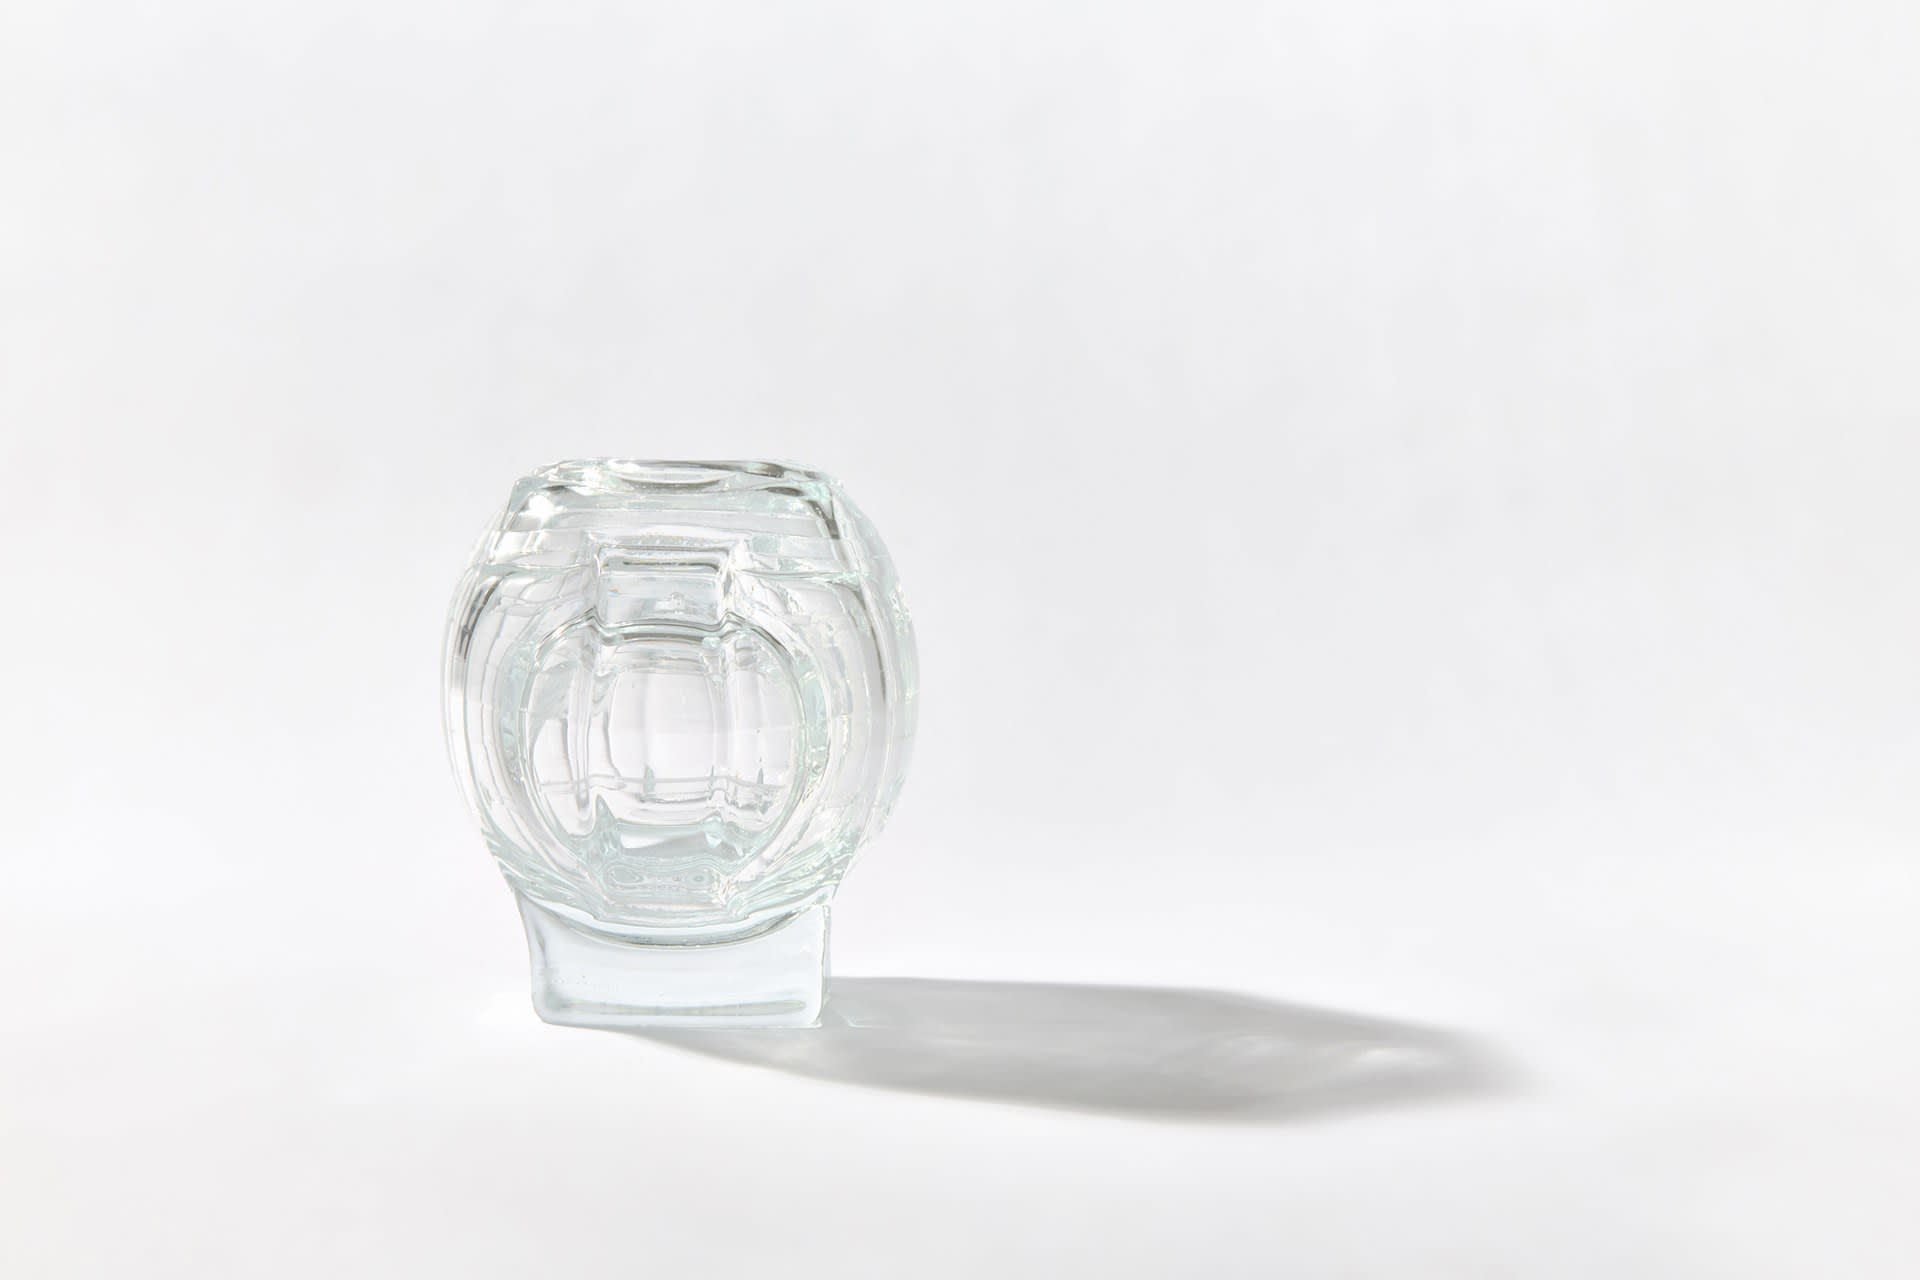 Sample 070.05.19 (2019). Blown waterjet-cut float glass (14.8 x 12.4 cm).